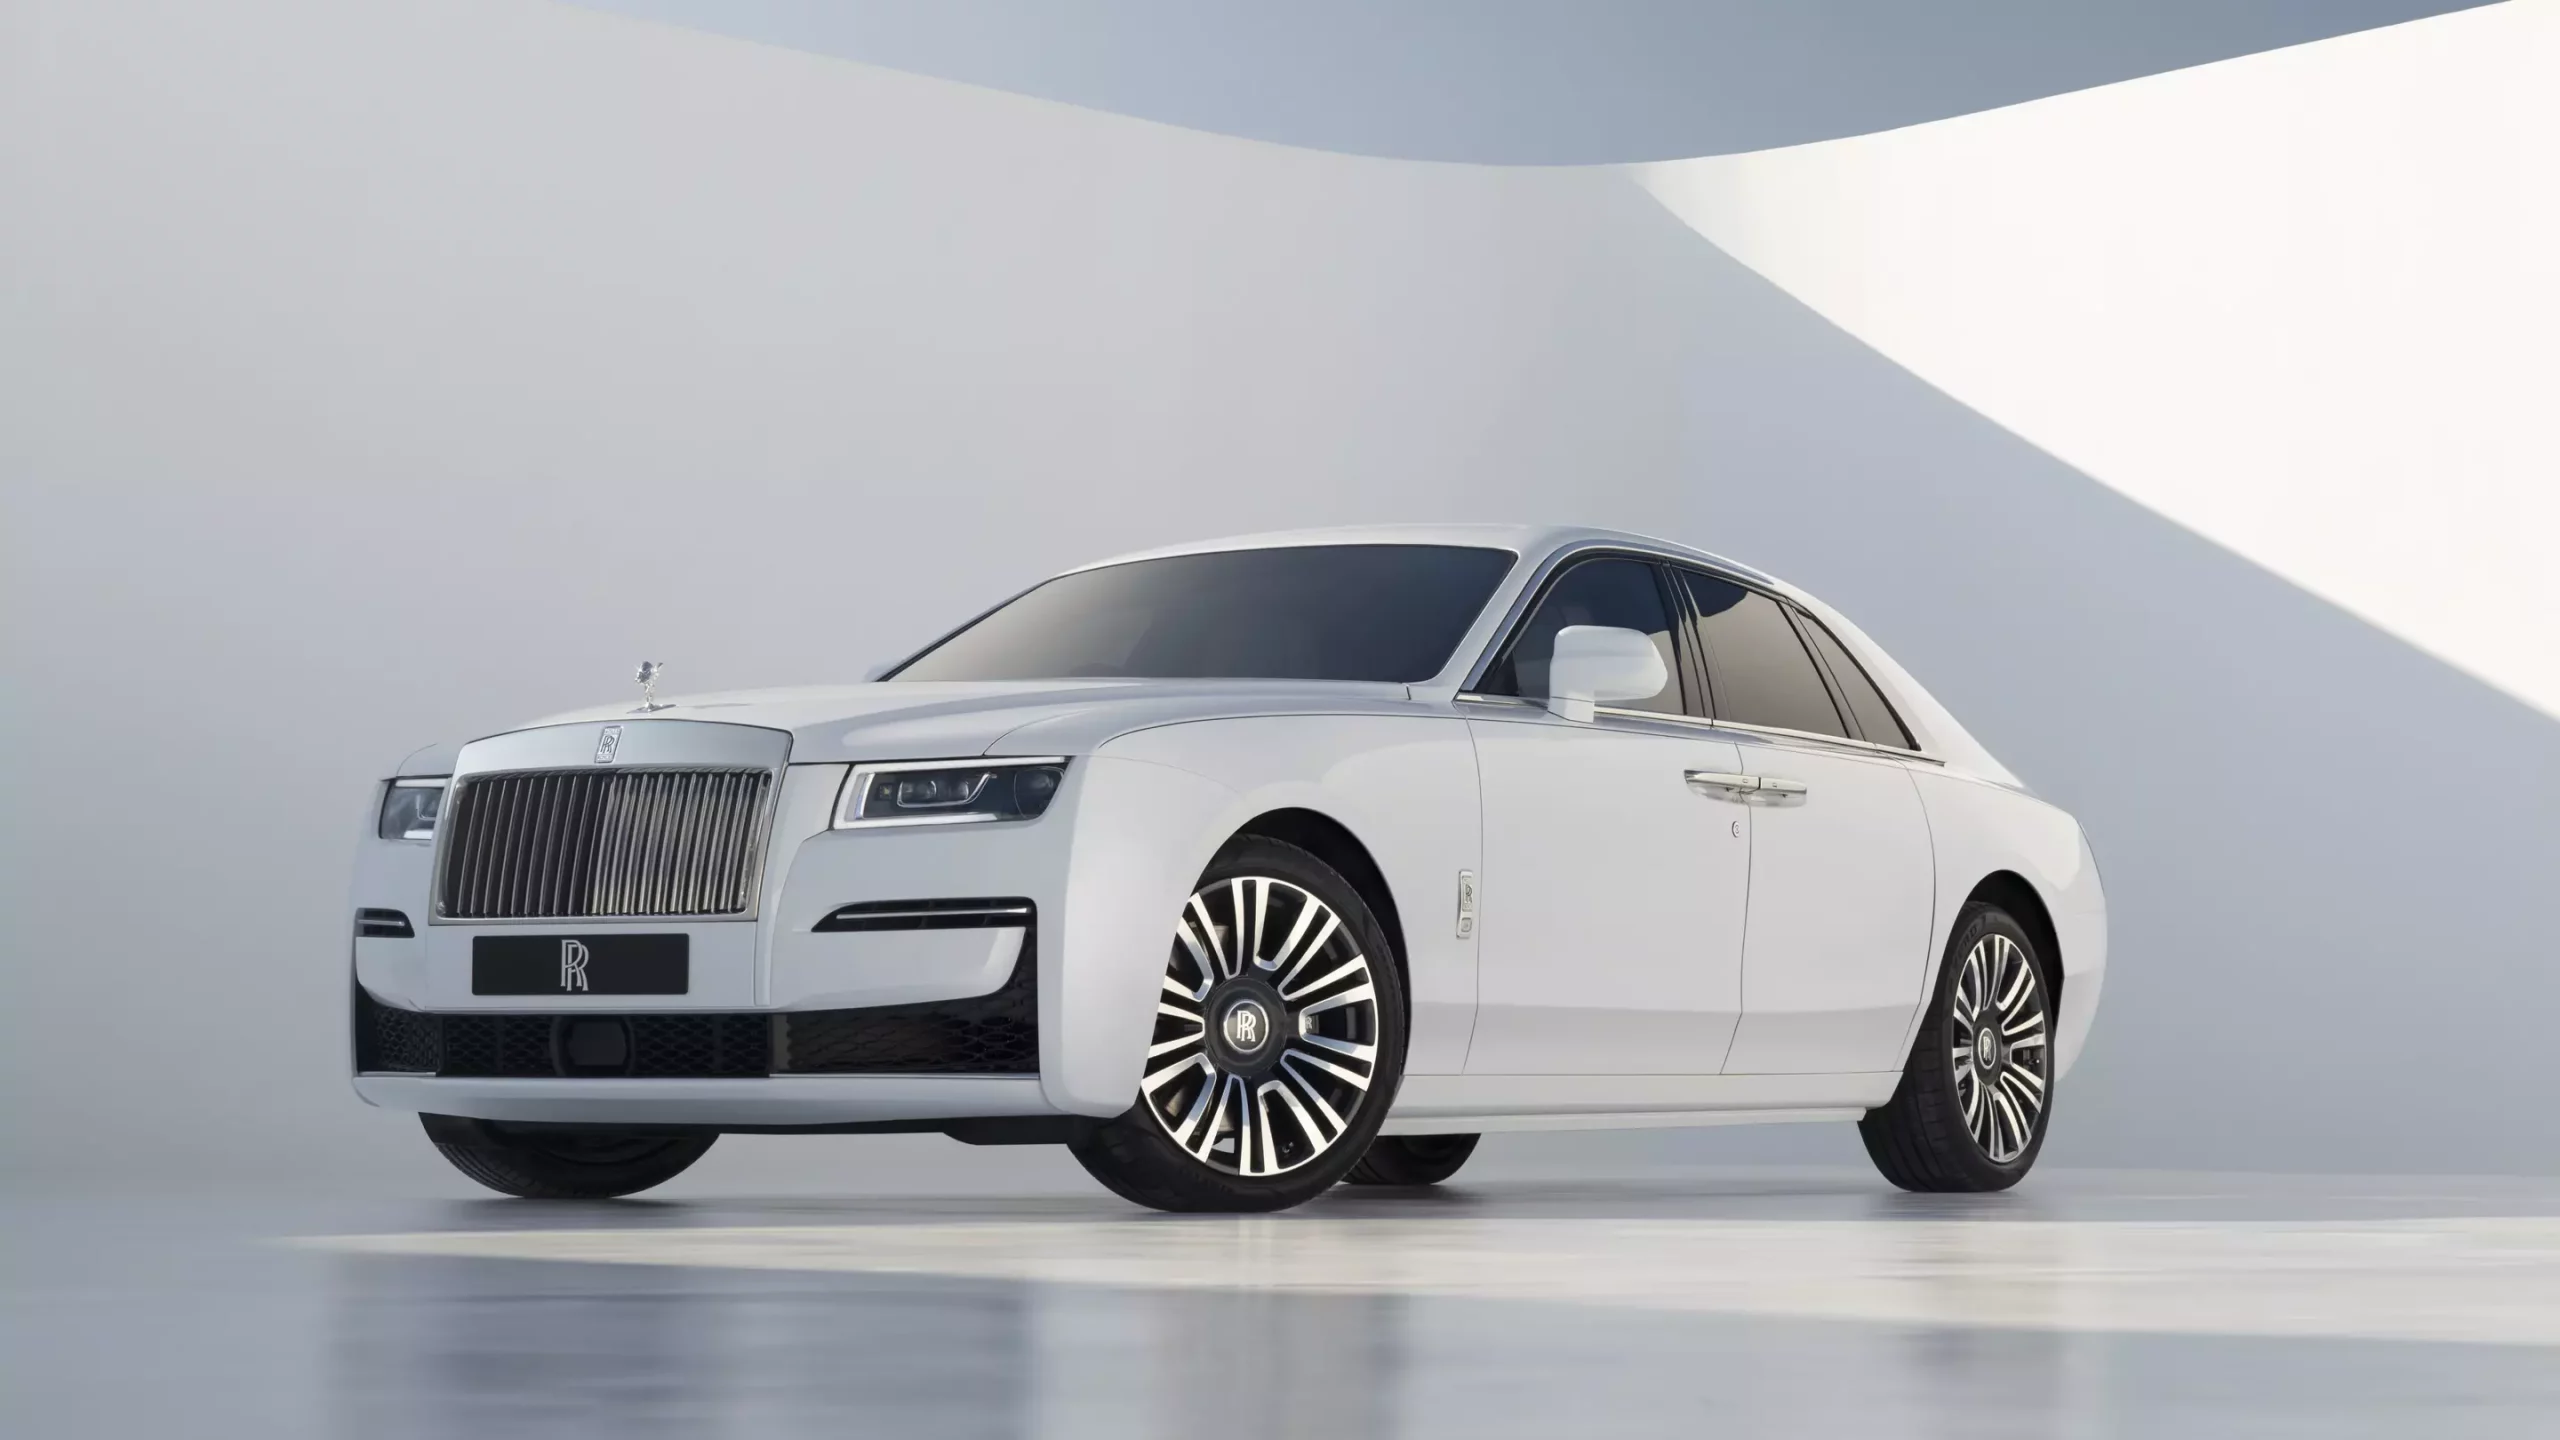 Harga Rolls Royce Ghost Terbaru, Review Lengkap Spesifikasi dan Interior!